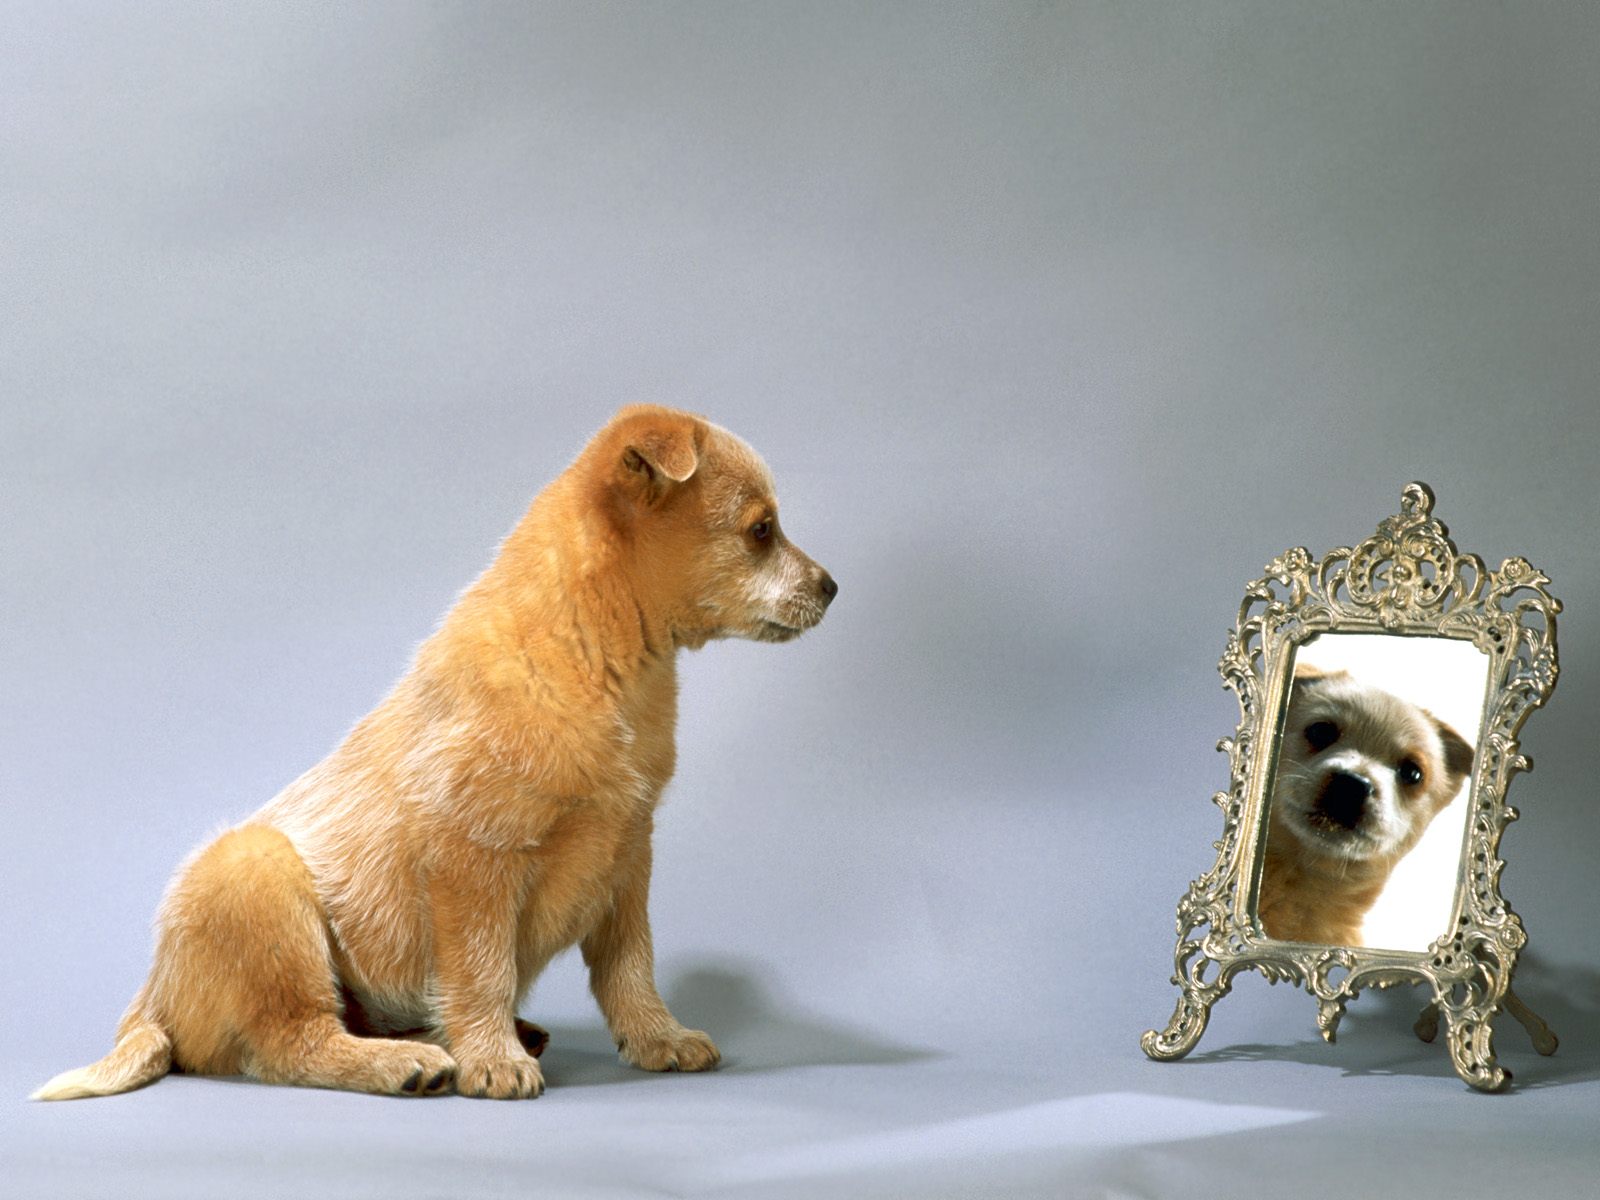 cachorro_australiano_olhando_no_espelho_1cb230b316995648a3dc31fee1736b28_cachorro australiano olhando no espelho